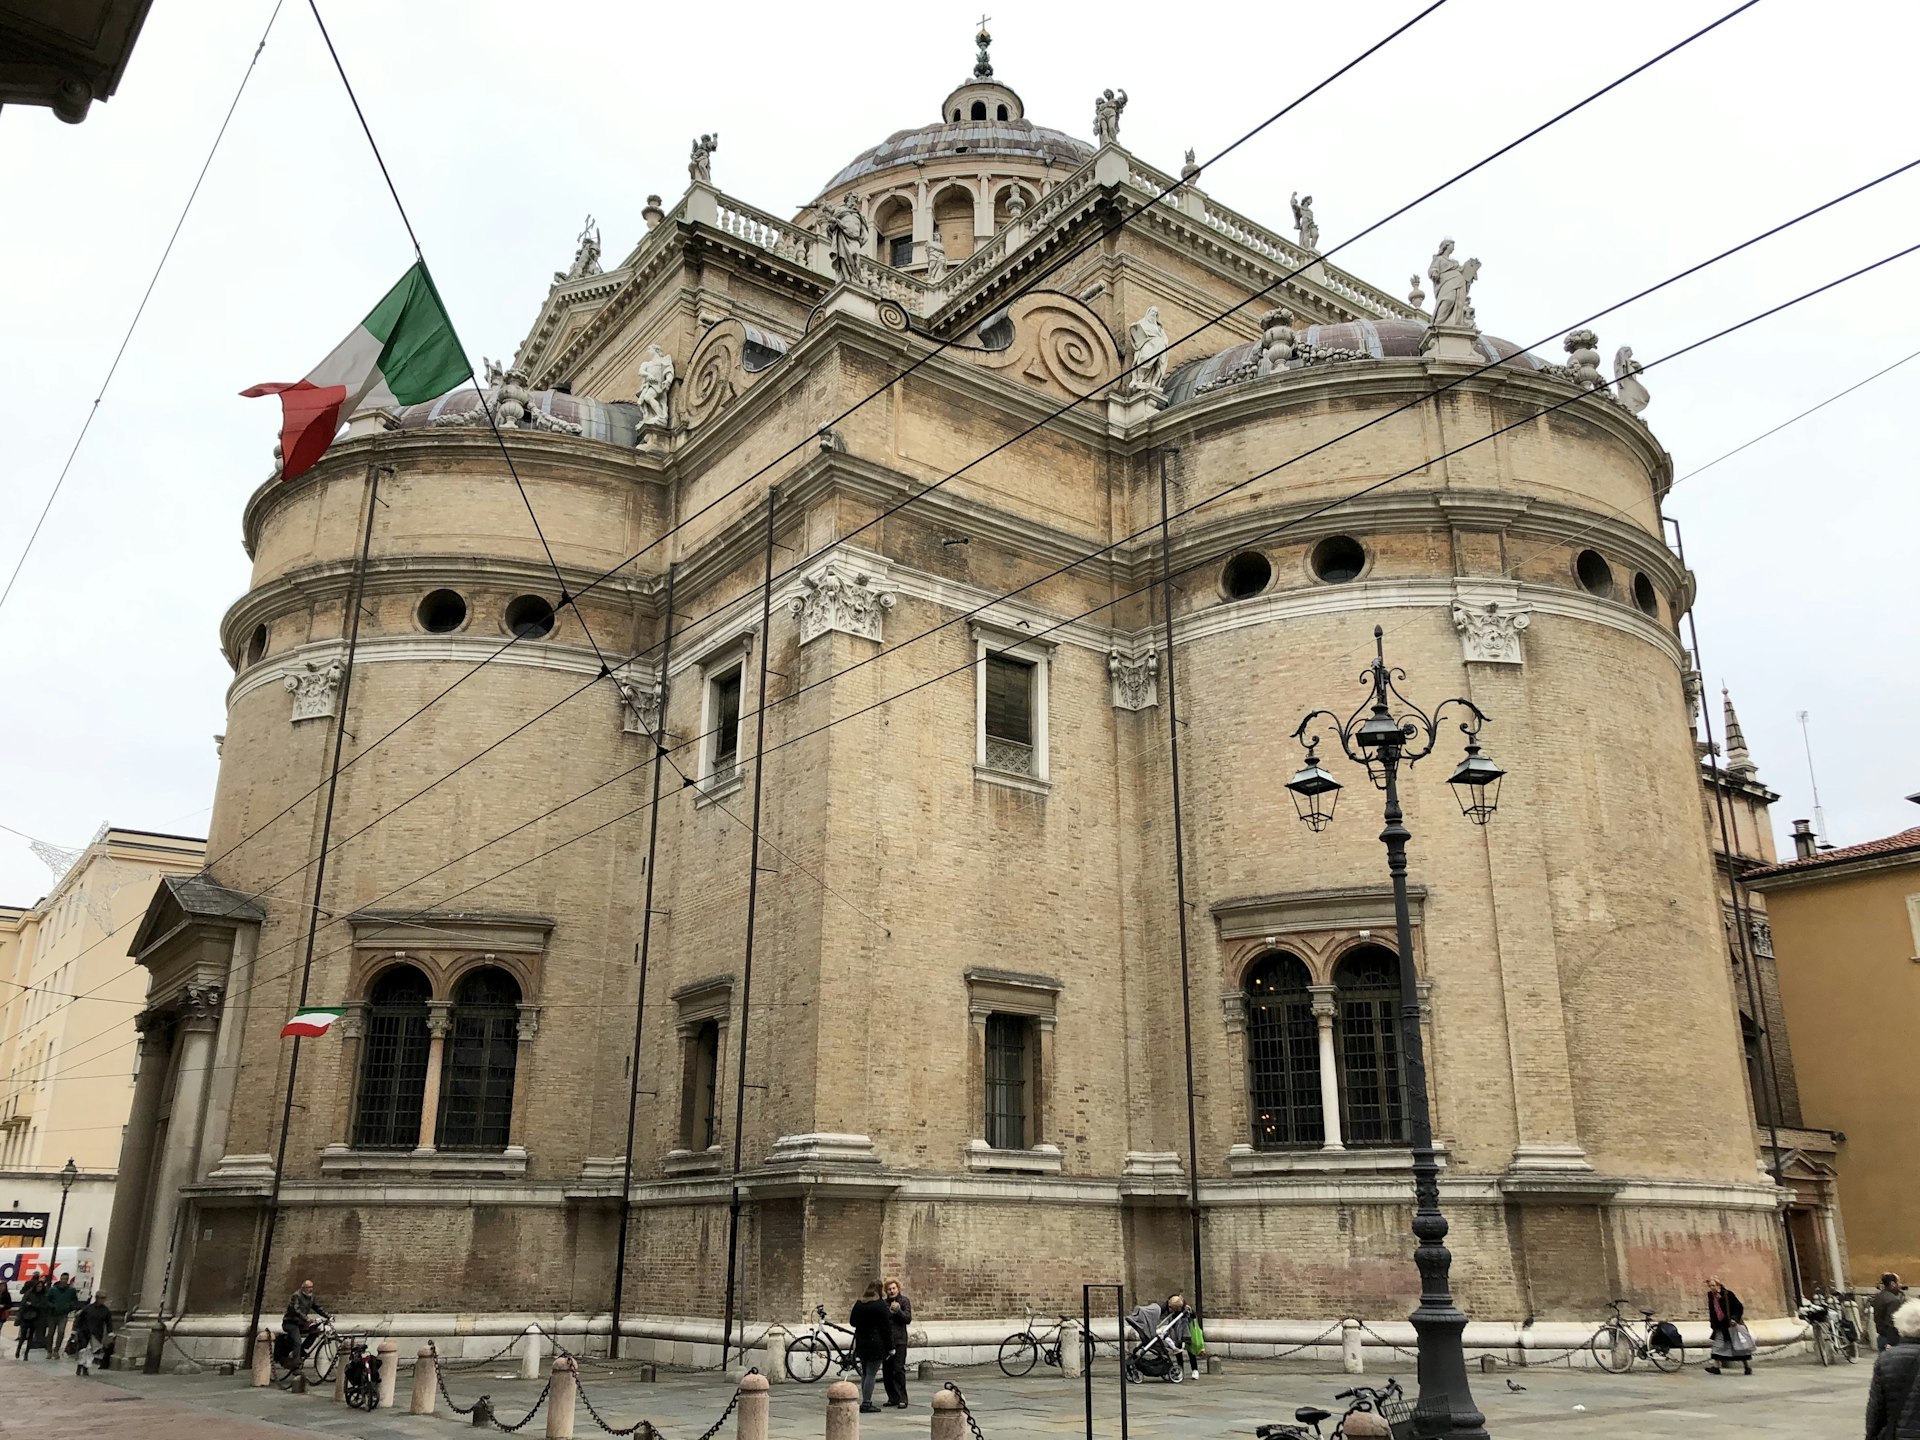 A historic Italian church on a sunny day. 